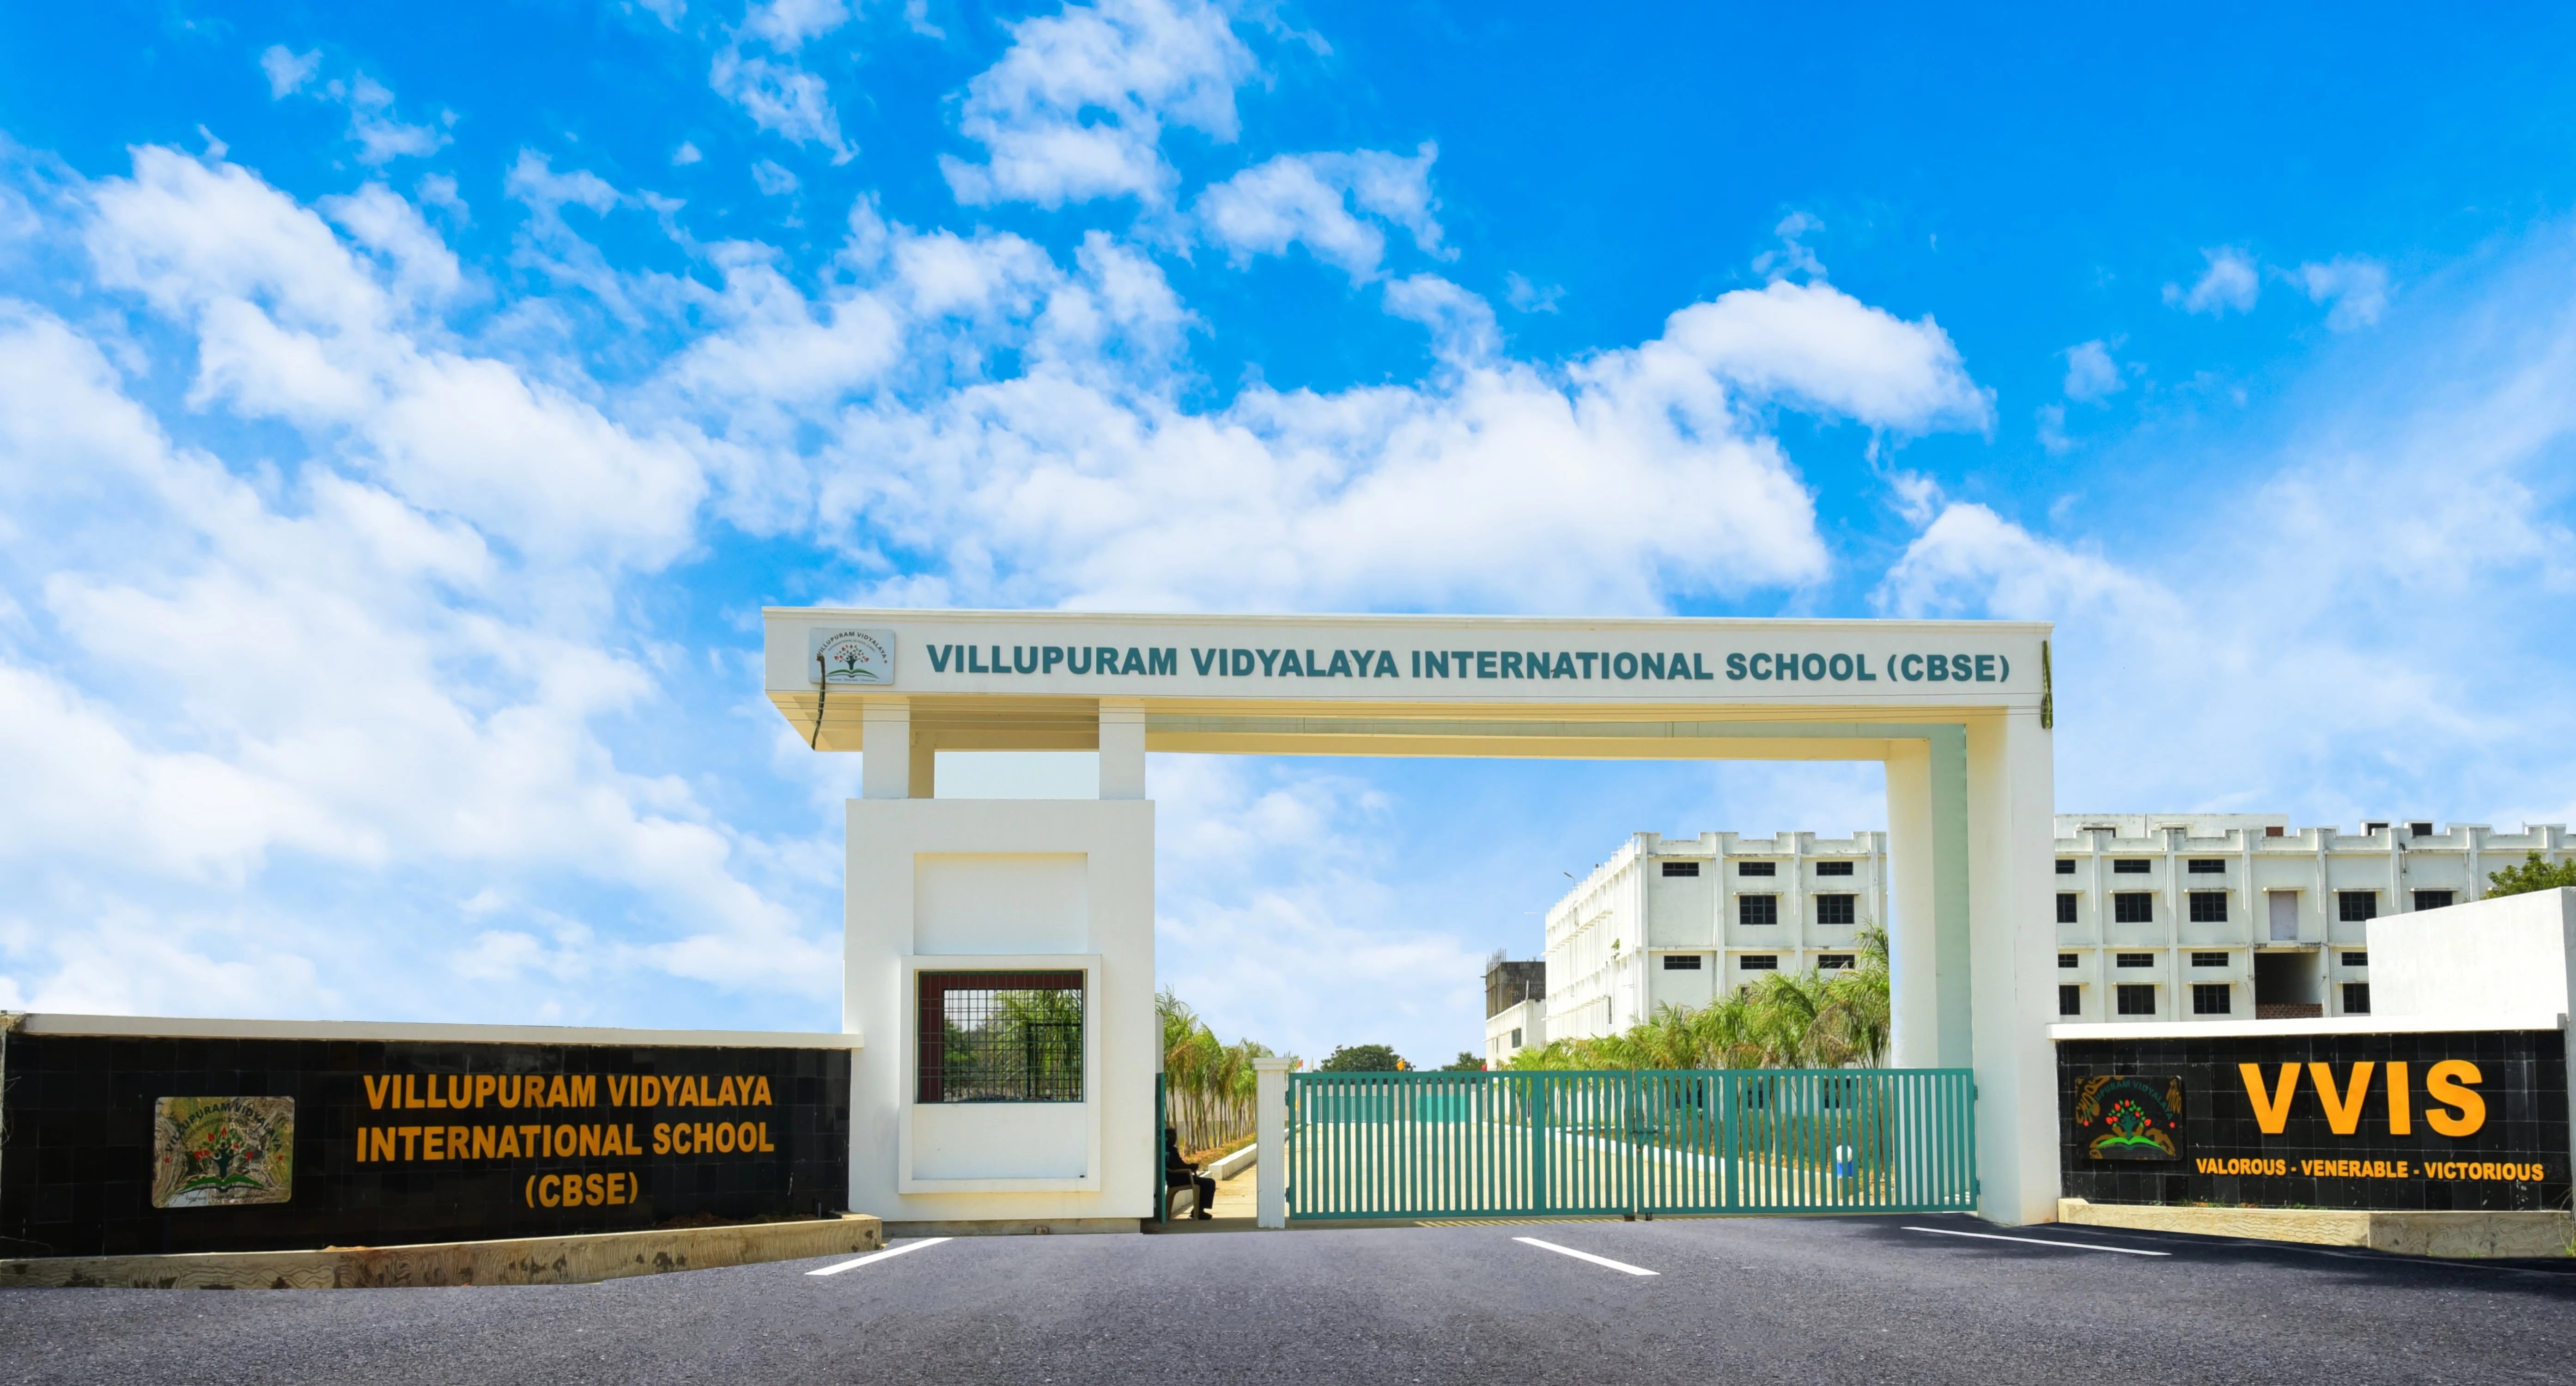 School entrance of Villupuram Vidyalaya lnternational School